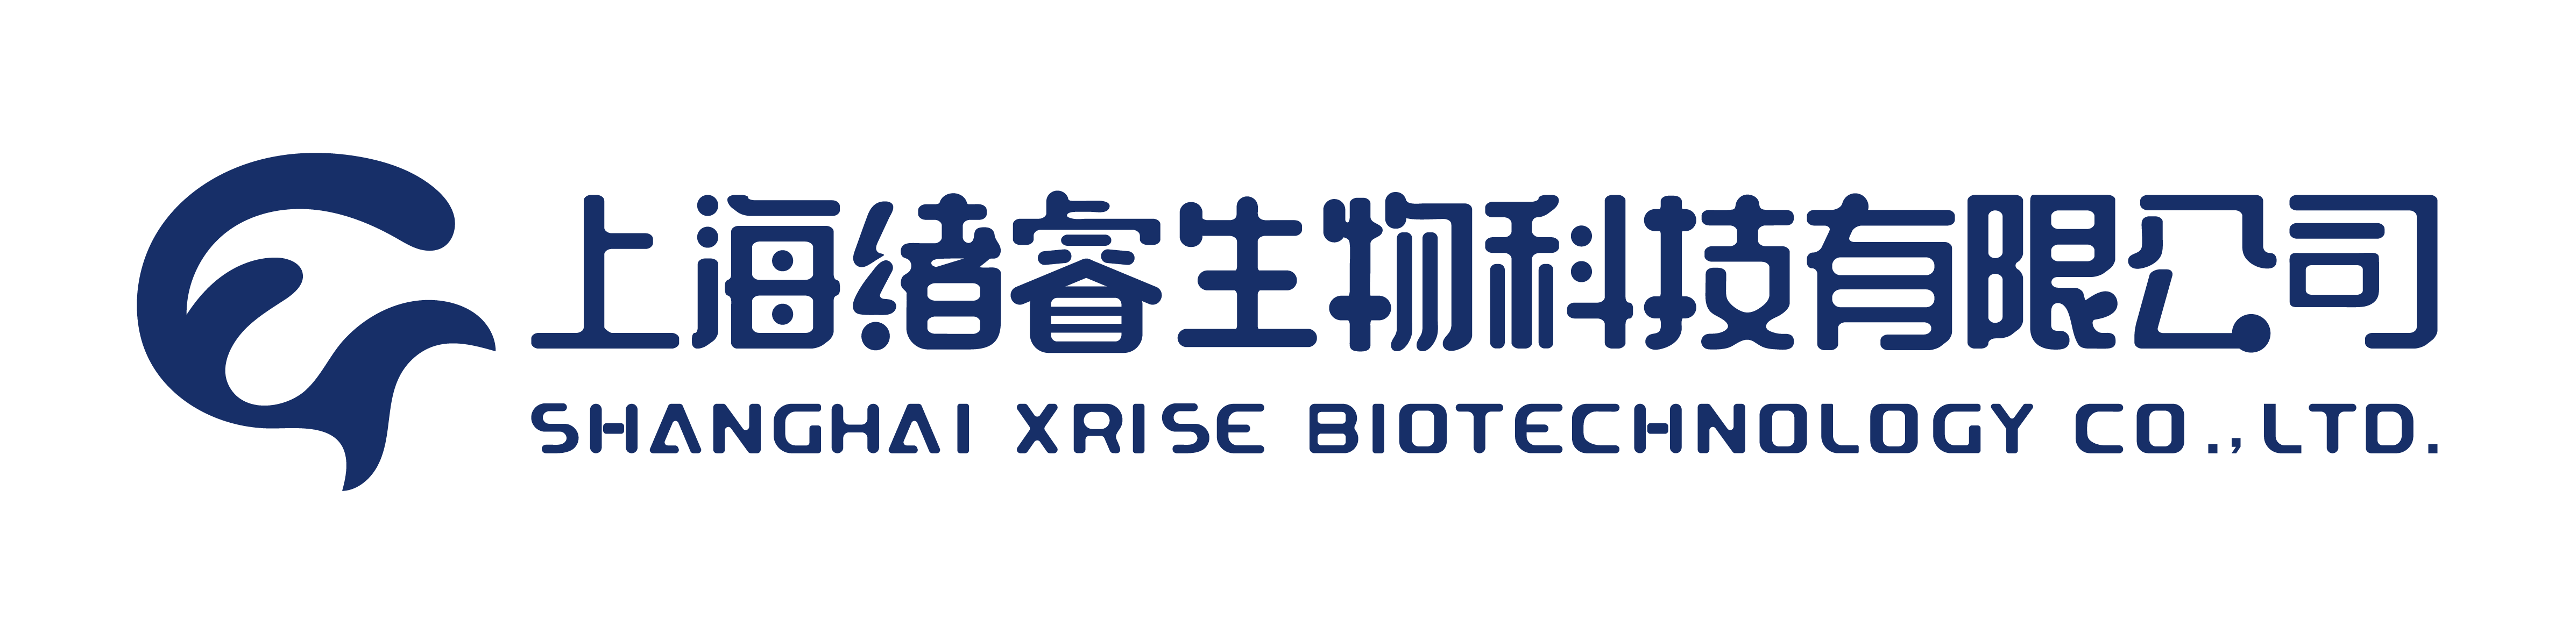 上海绪睿生物科技有限公司